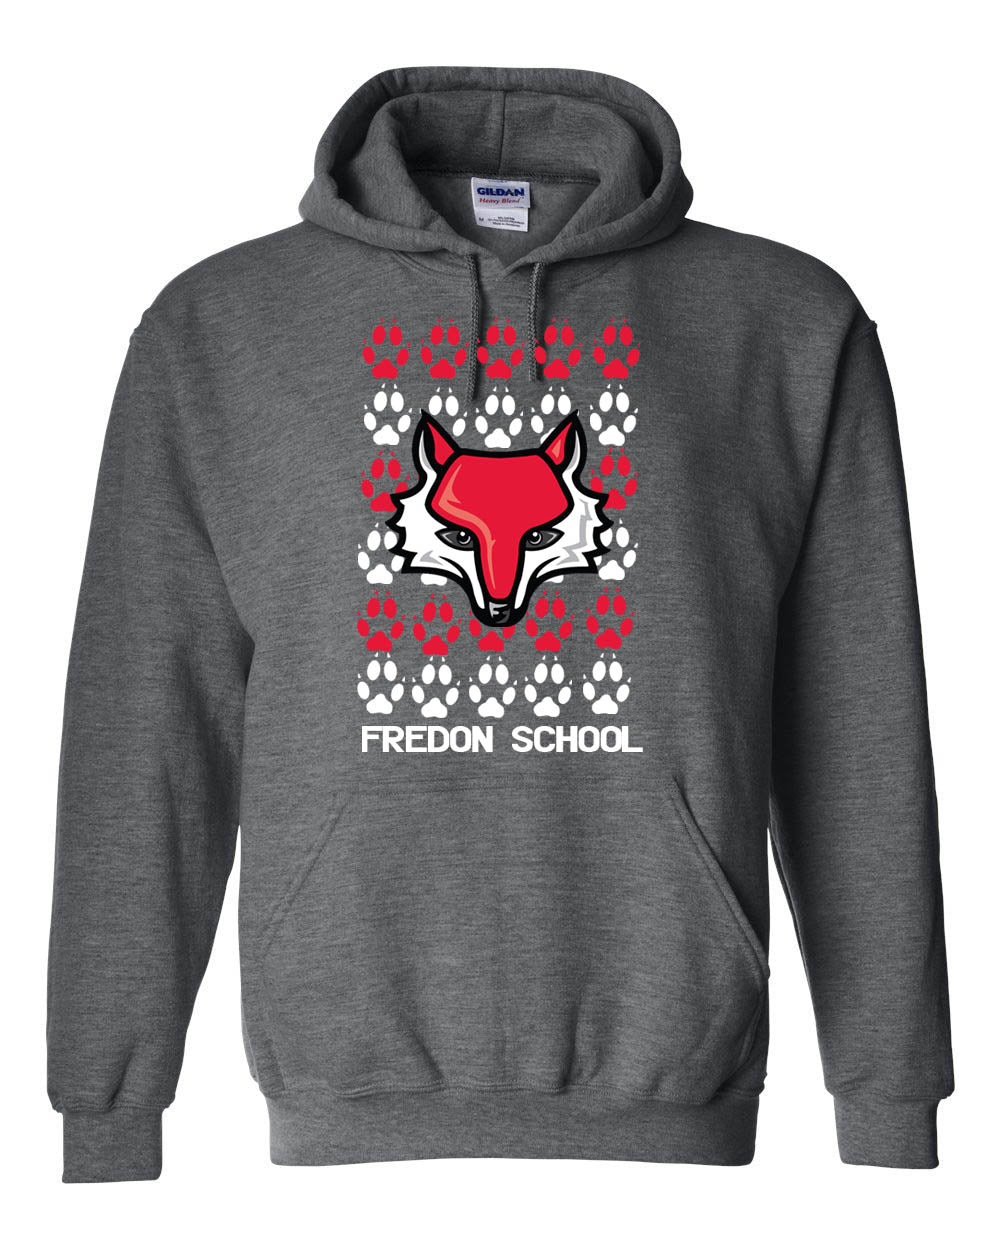 Fredon Design 3 Hooded Sweatshirt